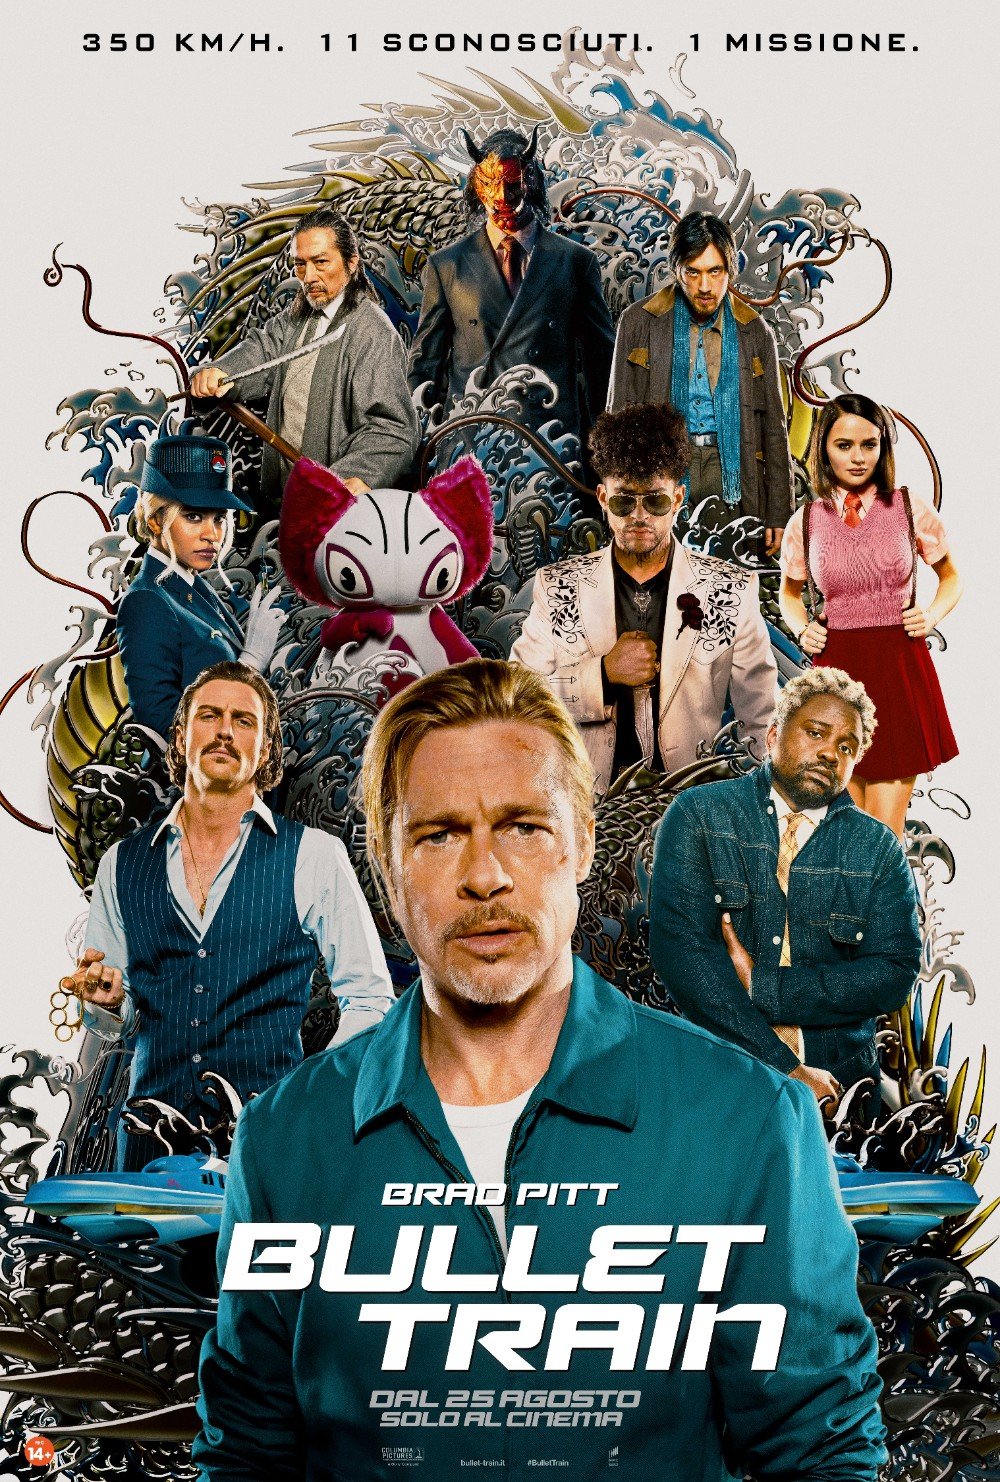 Il nuovo trailer e poster di Bullet Train con Brad Pitt.